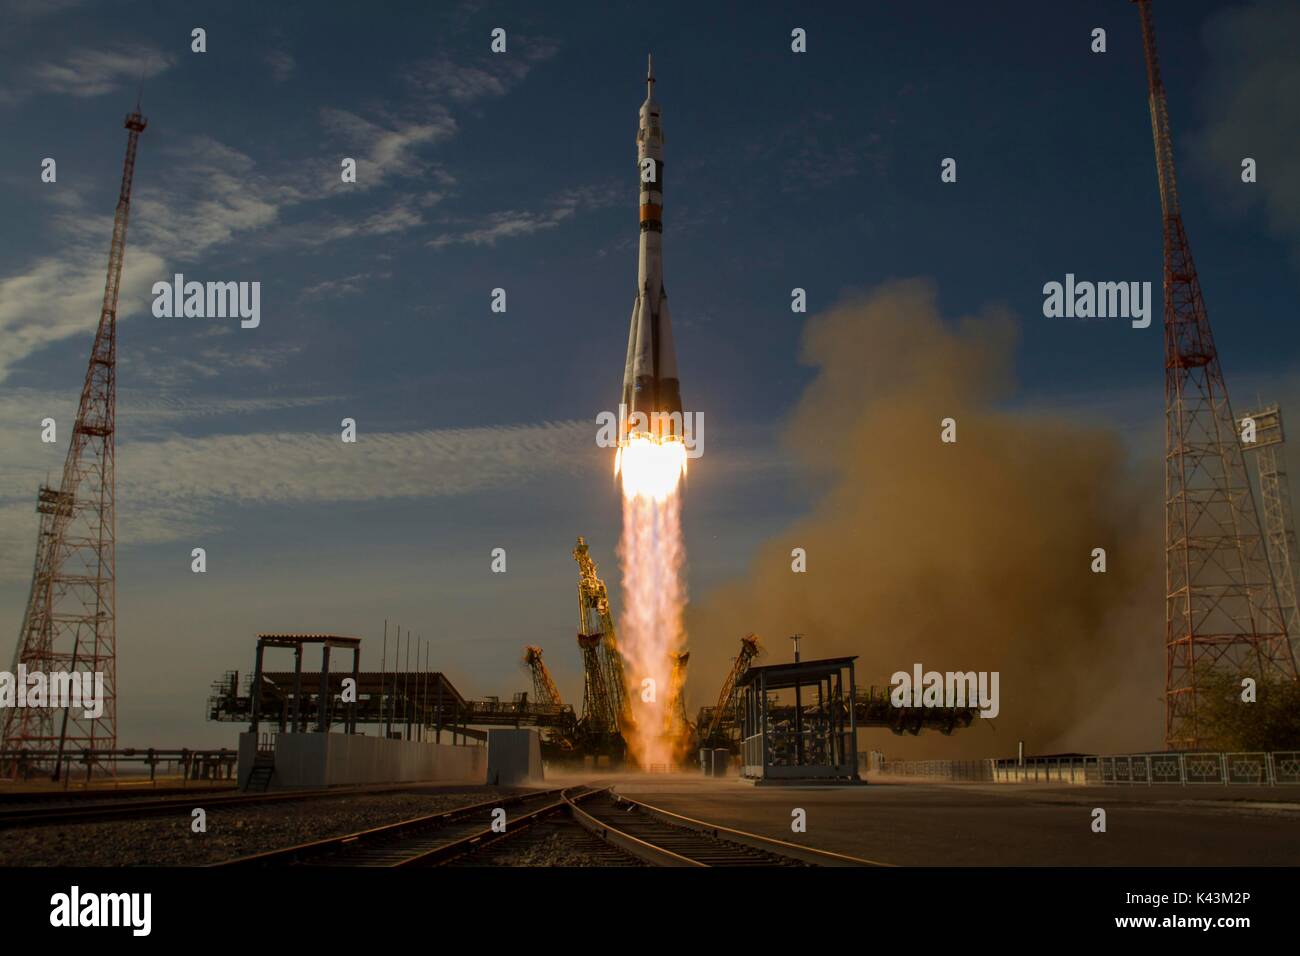 La nave Soyuz TMA-06M lanzamientos espaciales desde el cosmódromo de Baikonur para comenzar la expedición 33/34 misión a la Estación Espacial Internacional de la NASA Octubre 23, 2012 en Baikonur, Kazajstán. (Foto por Bill Ingalls via Planetpix) Foto de stock